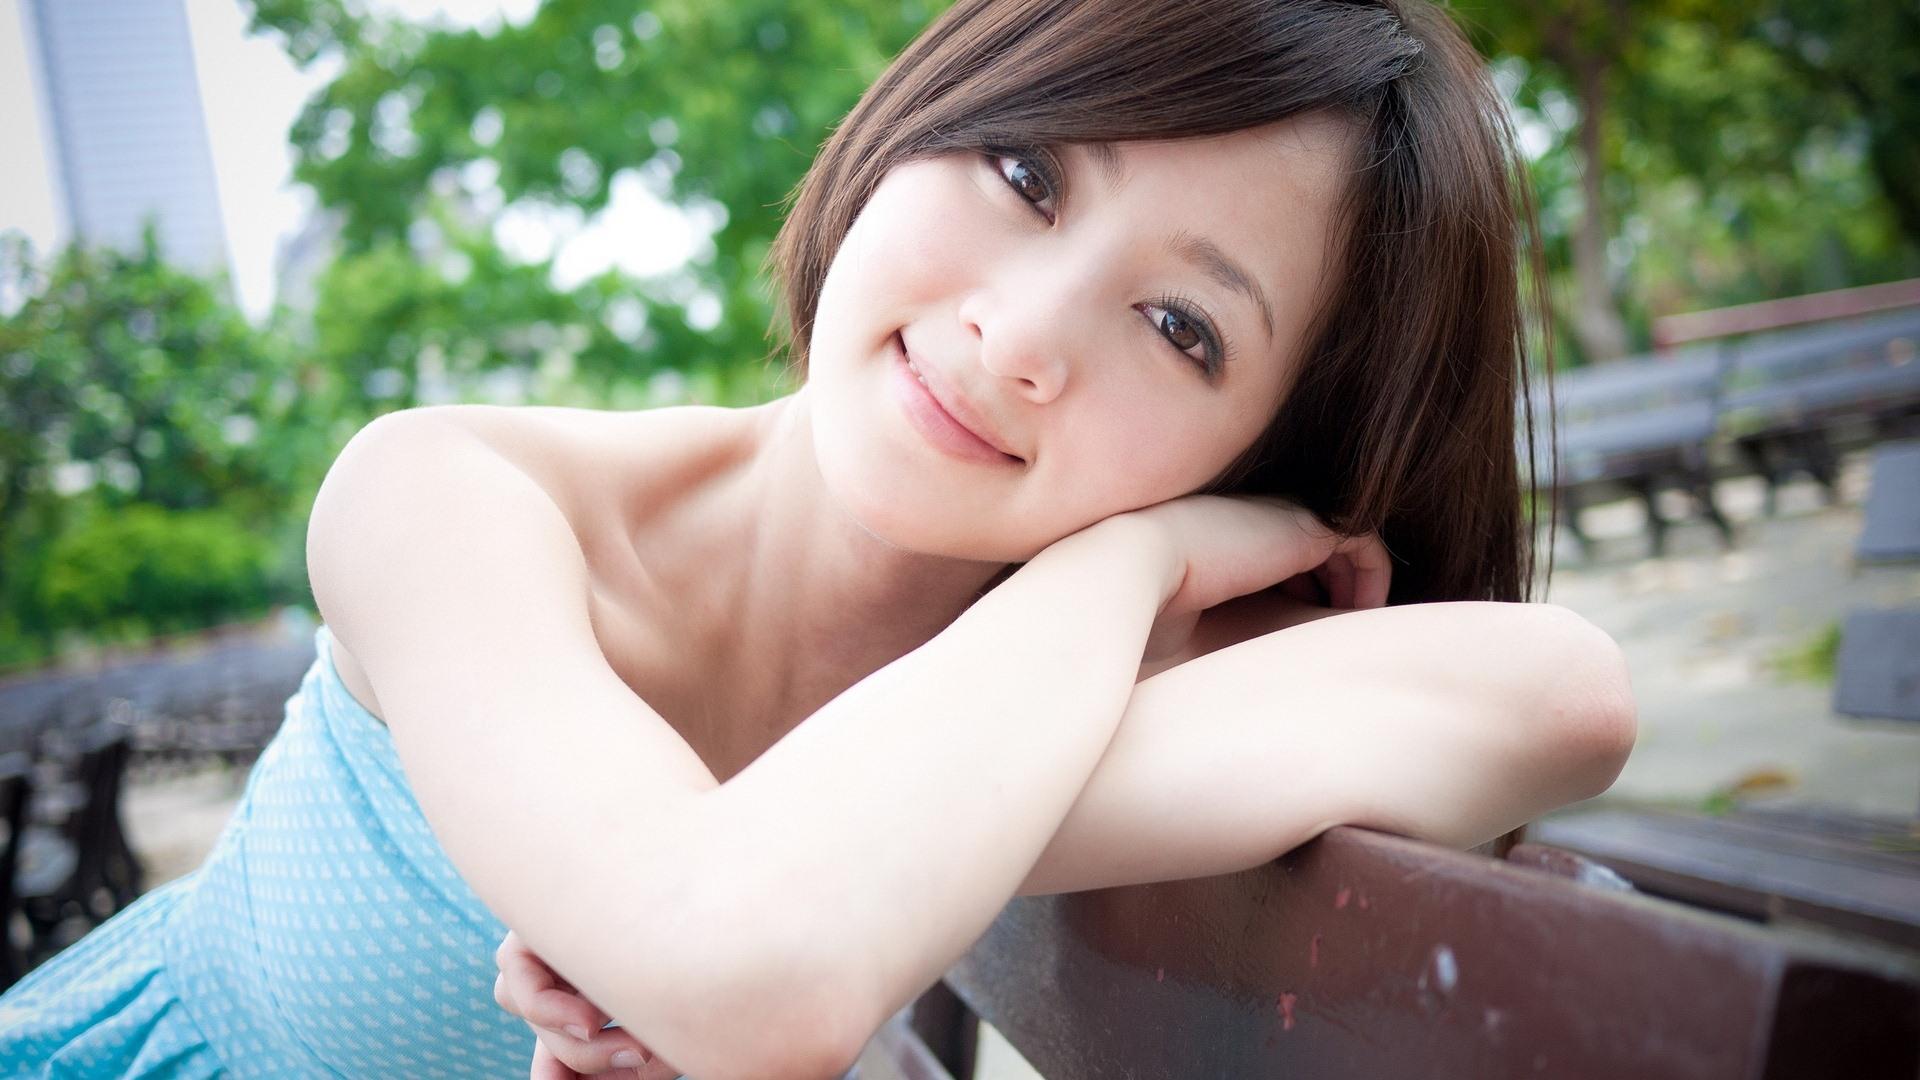 Japanese Girls Image HD Wallpaper